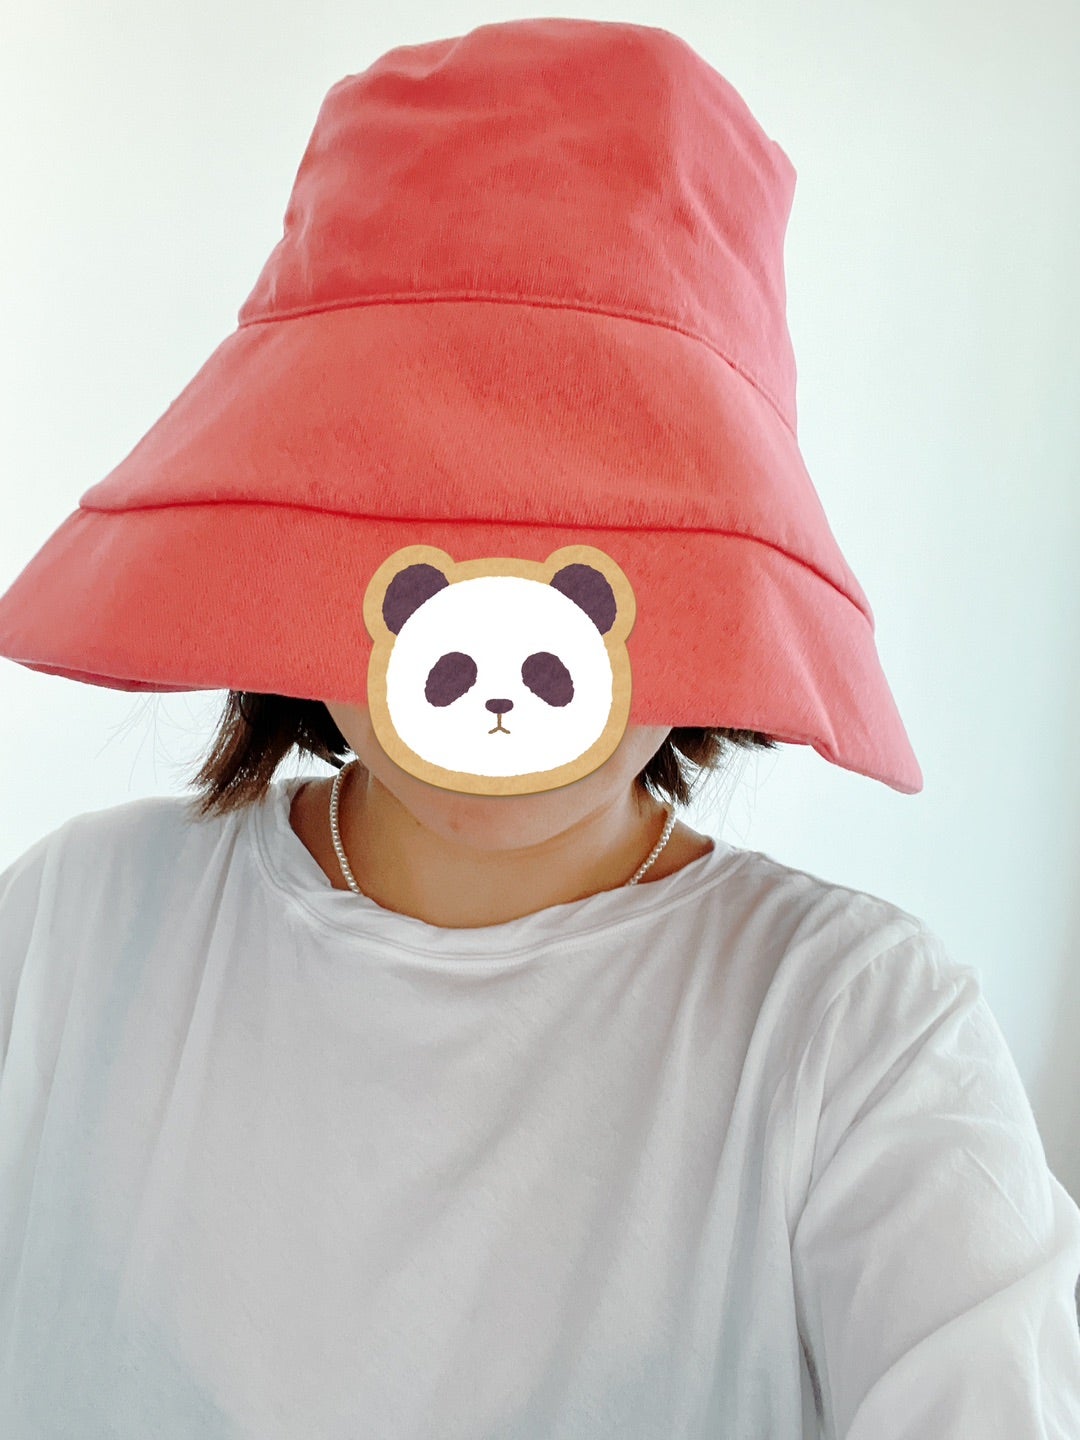 帽子2種類を購入。 | nanaオフィシャルブログ Powered by Ameba